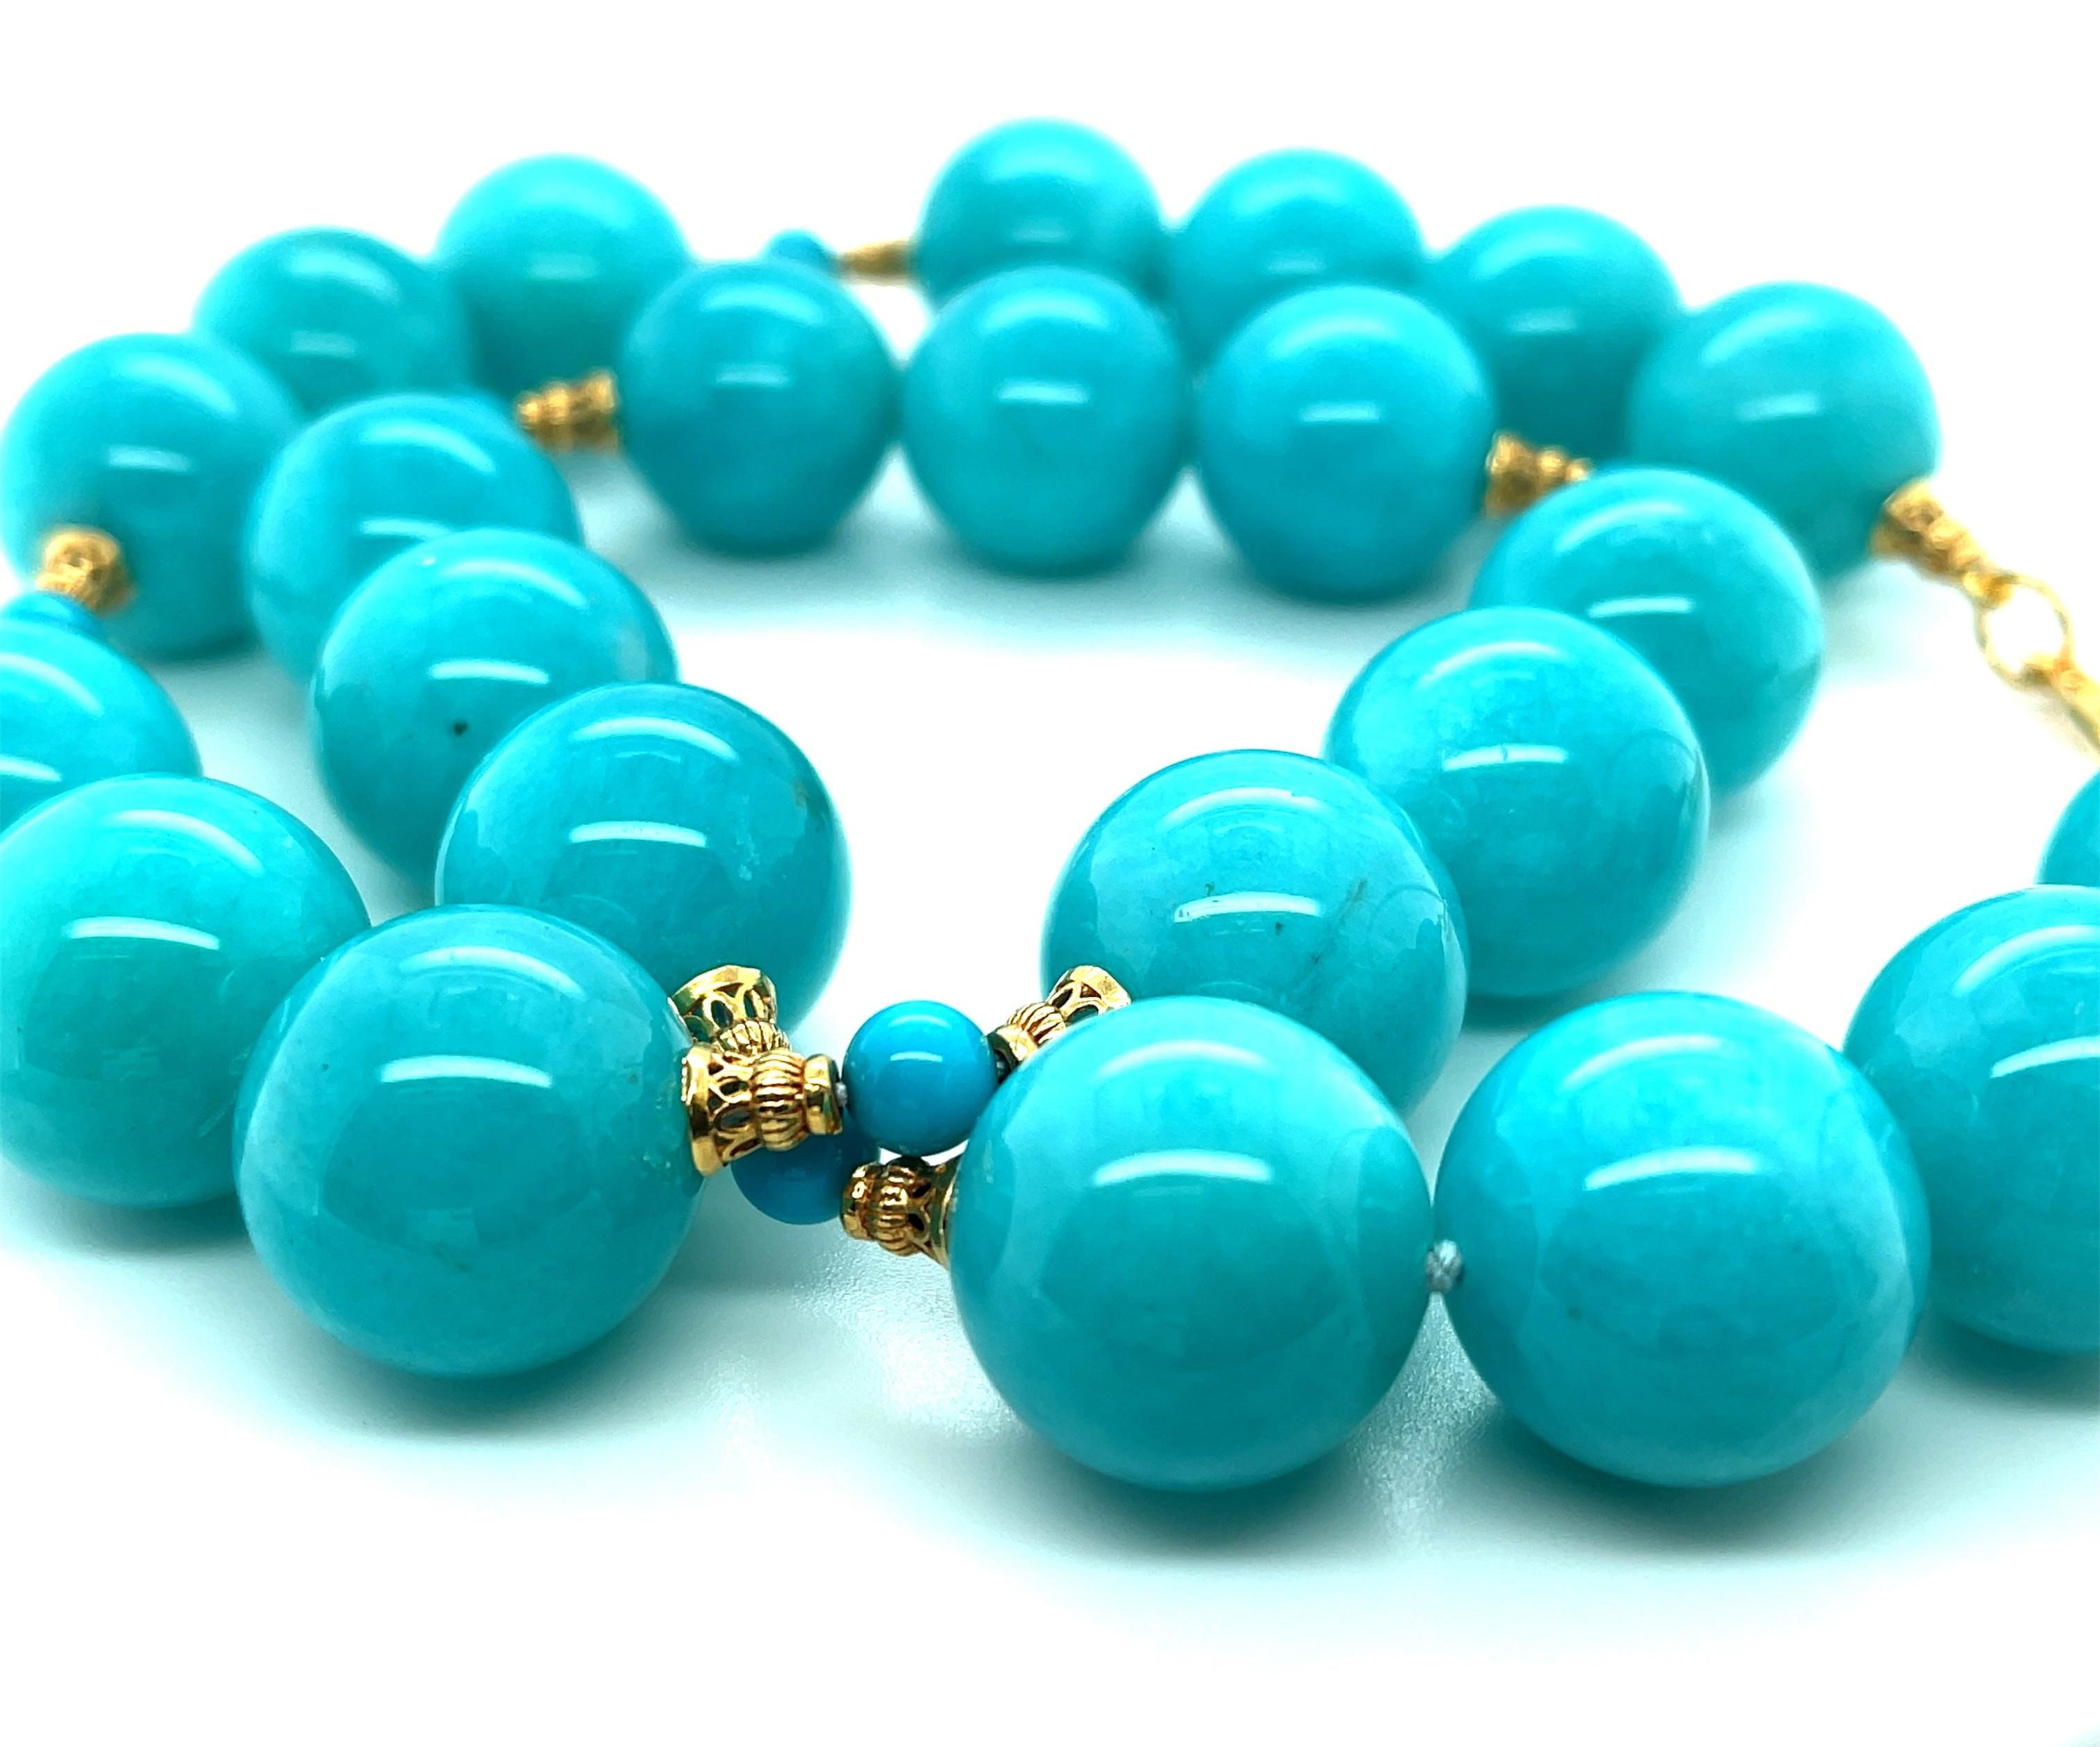 Ce magnifique collier est composé d'une collection de perles d'amazonite rondes de 18 mm parfaitement assorties et d'une couleur vibrante et magnifique ! Les grandes perles d'amazonite sont associées à de plus petites perles de turquoise et à des